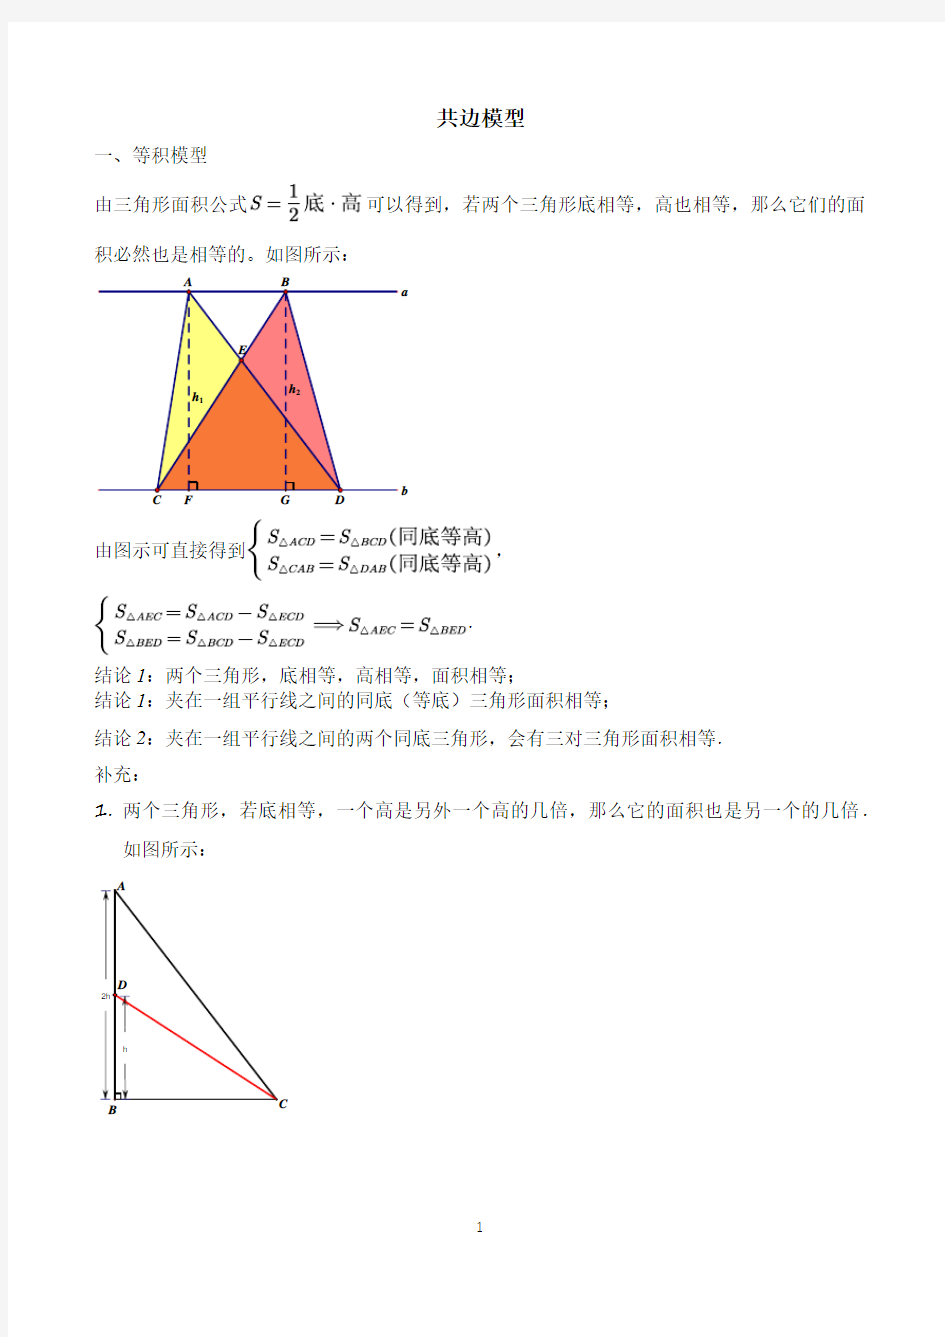 【精品奥数】五年级下册数学奥数讲义--第一讲  共边模型   通用版(含答案)